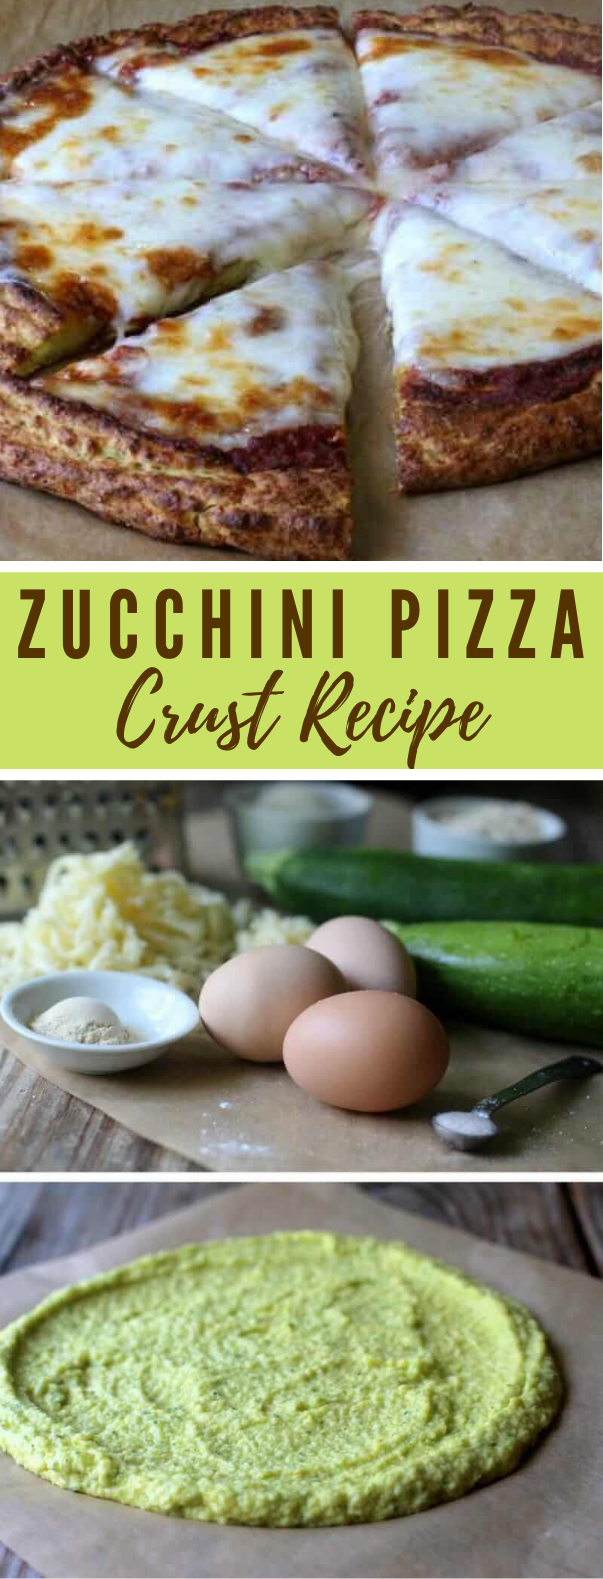 Zucchini Pizza Crust Recipe #vegetarian #easy